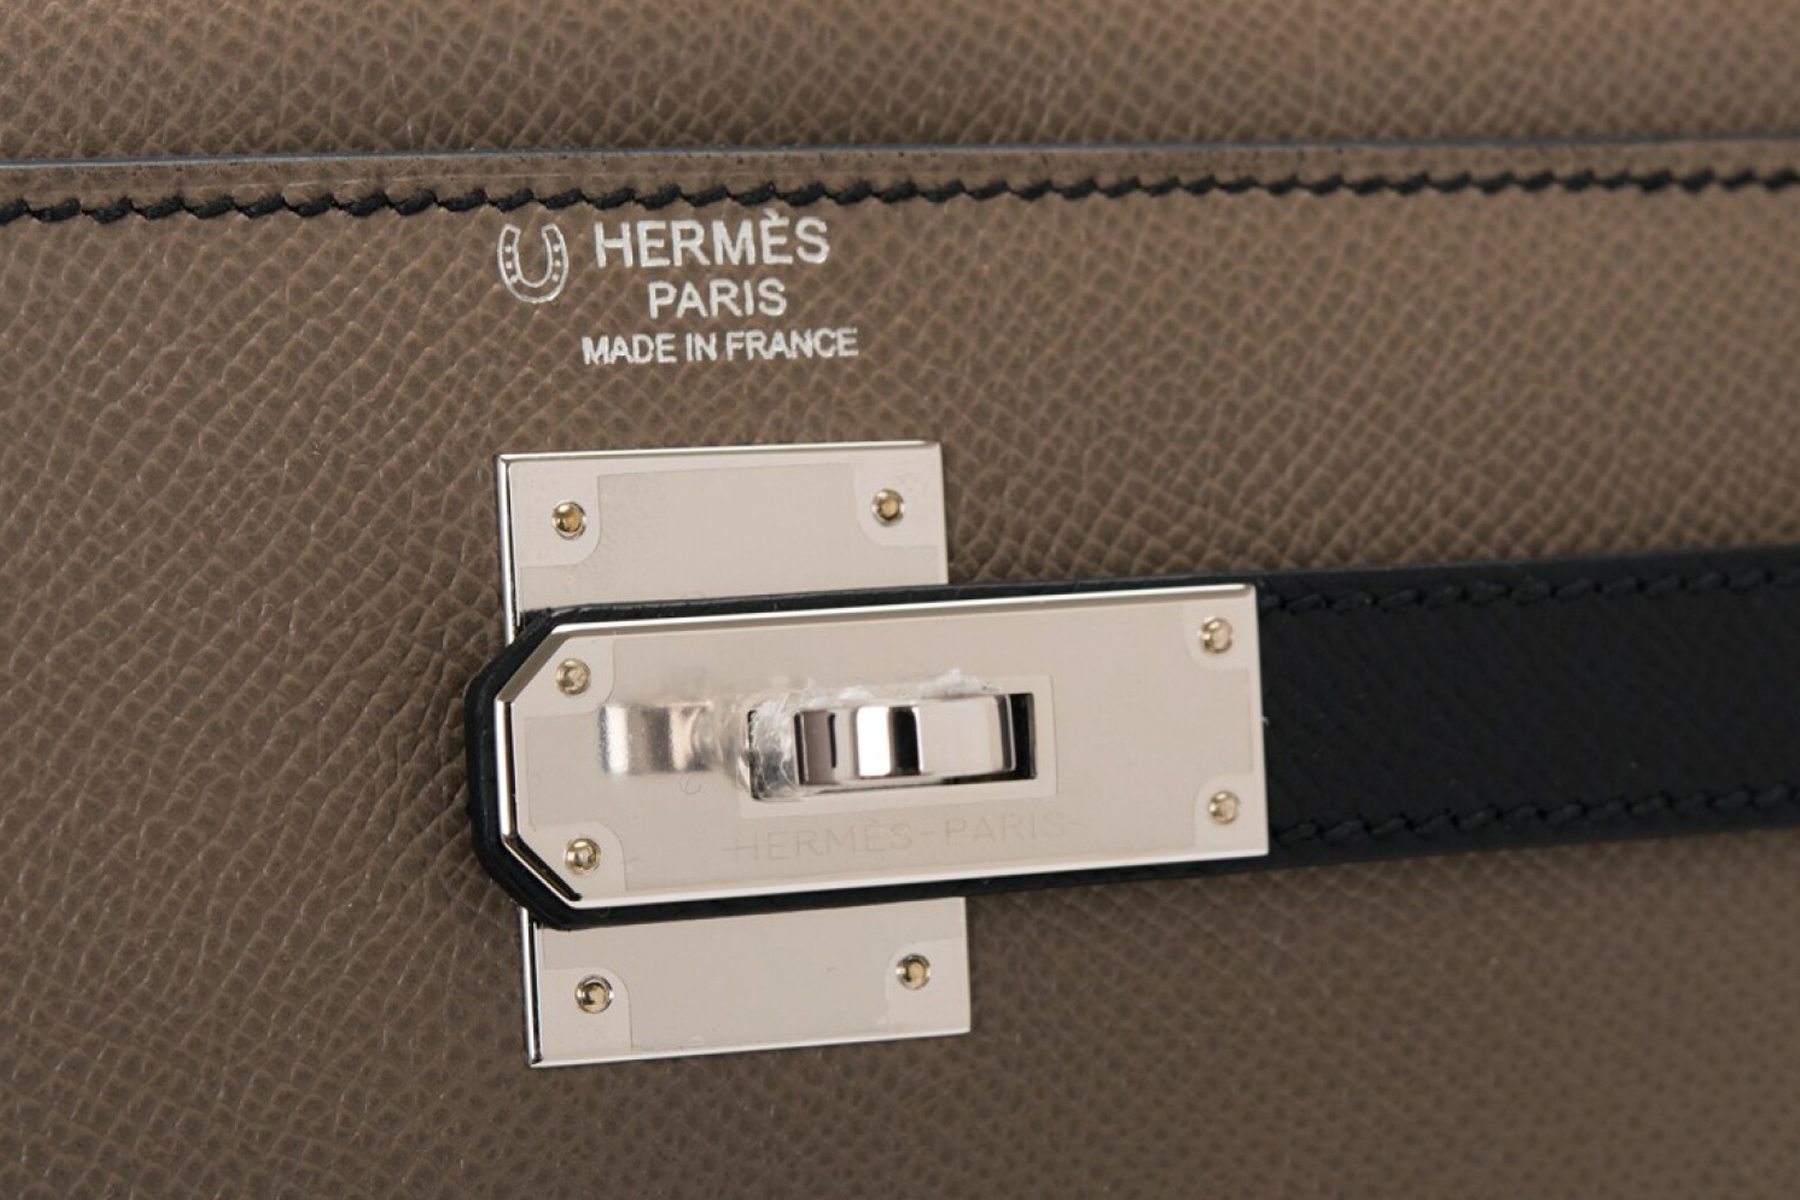 Hermès borse bag simboli segreti